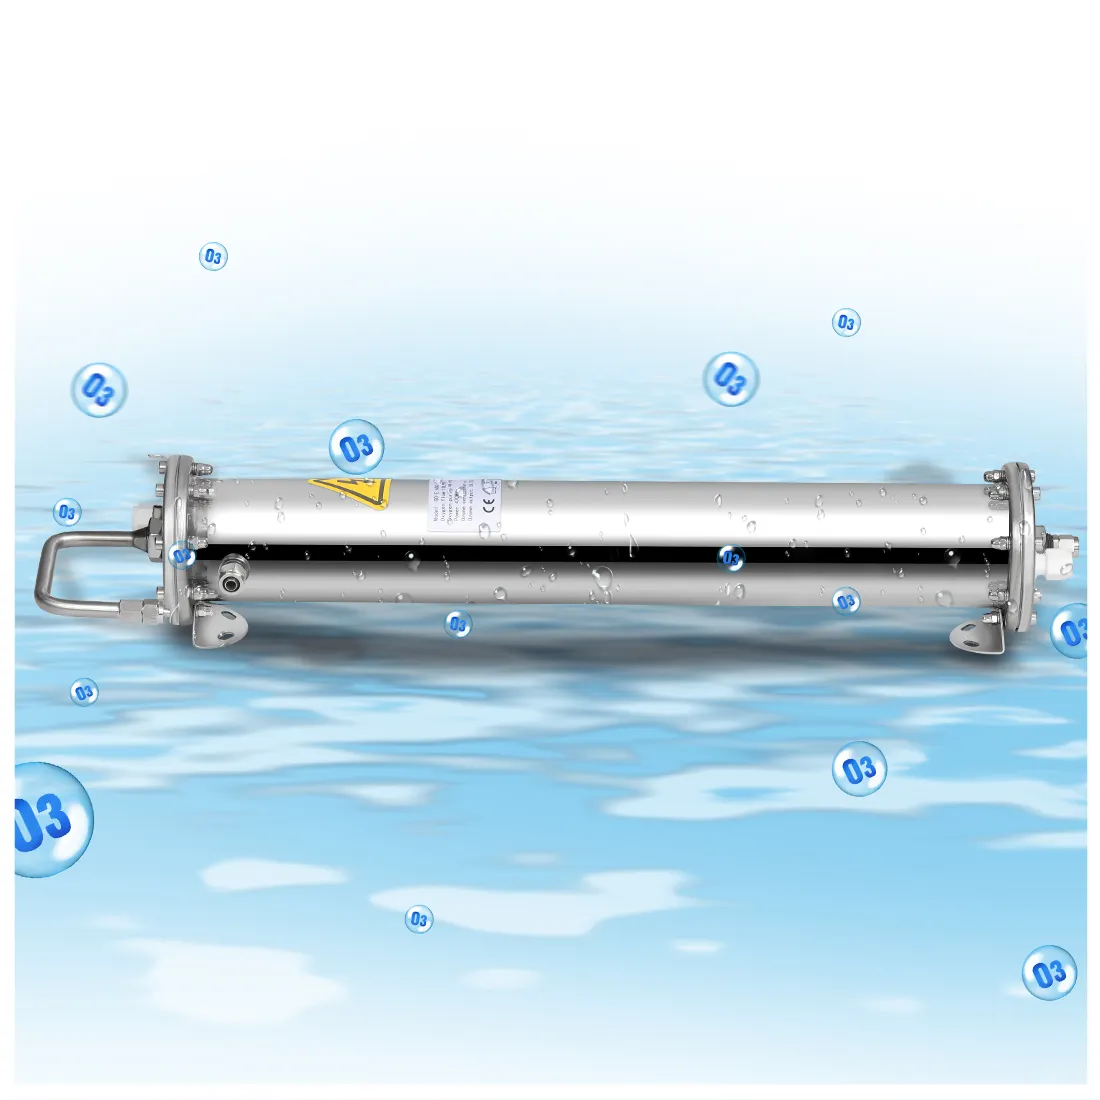 Sulama su arıtma ozon taze su filtreleme sistemi için 50g 60g tarım ozon jeneratörü